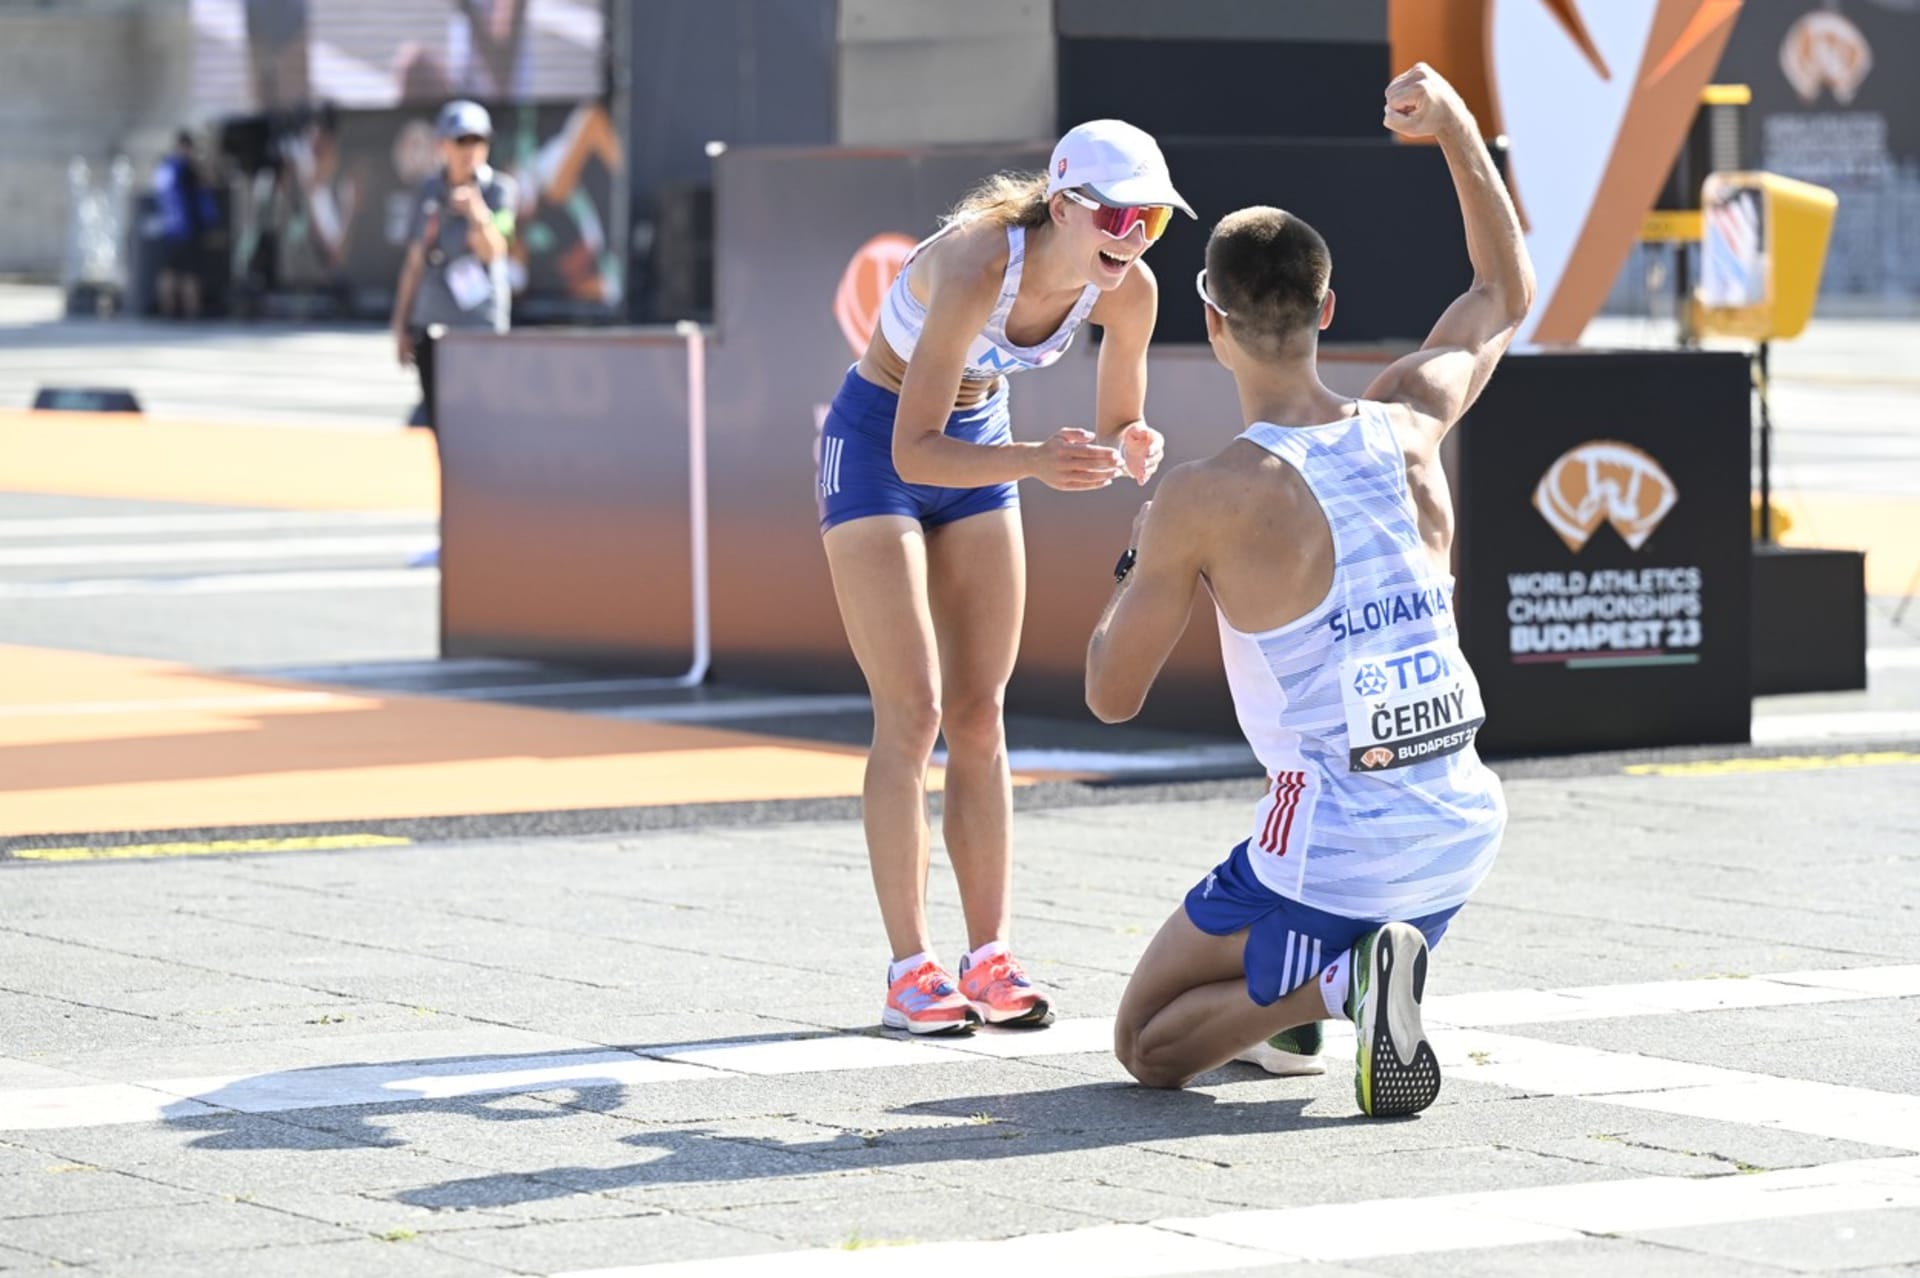 Ke zlatu sice měli slovenští chodci Dominik Černý a Hana Burzalová v závodě daleko, k oslavám i přesto byl důvod. Za cílovou čárou proběhla žádost o ruku.